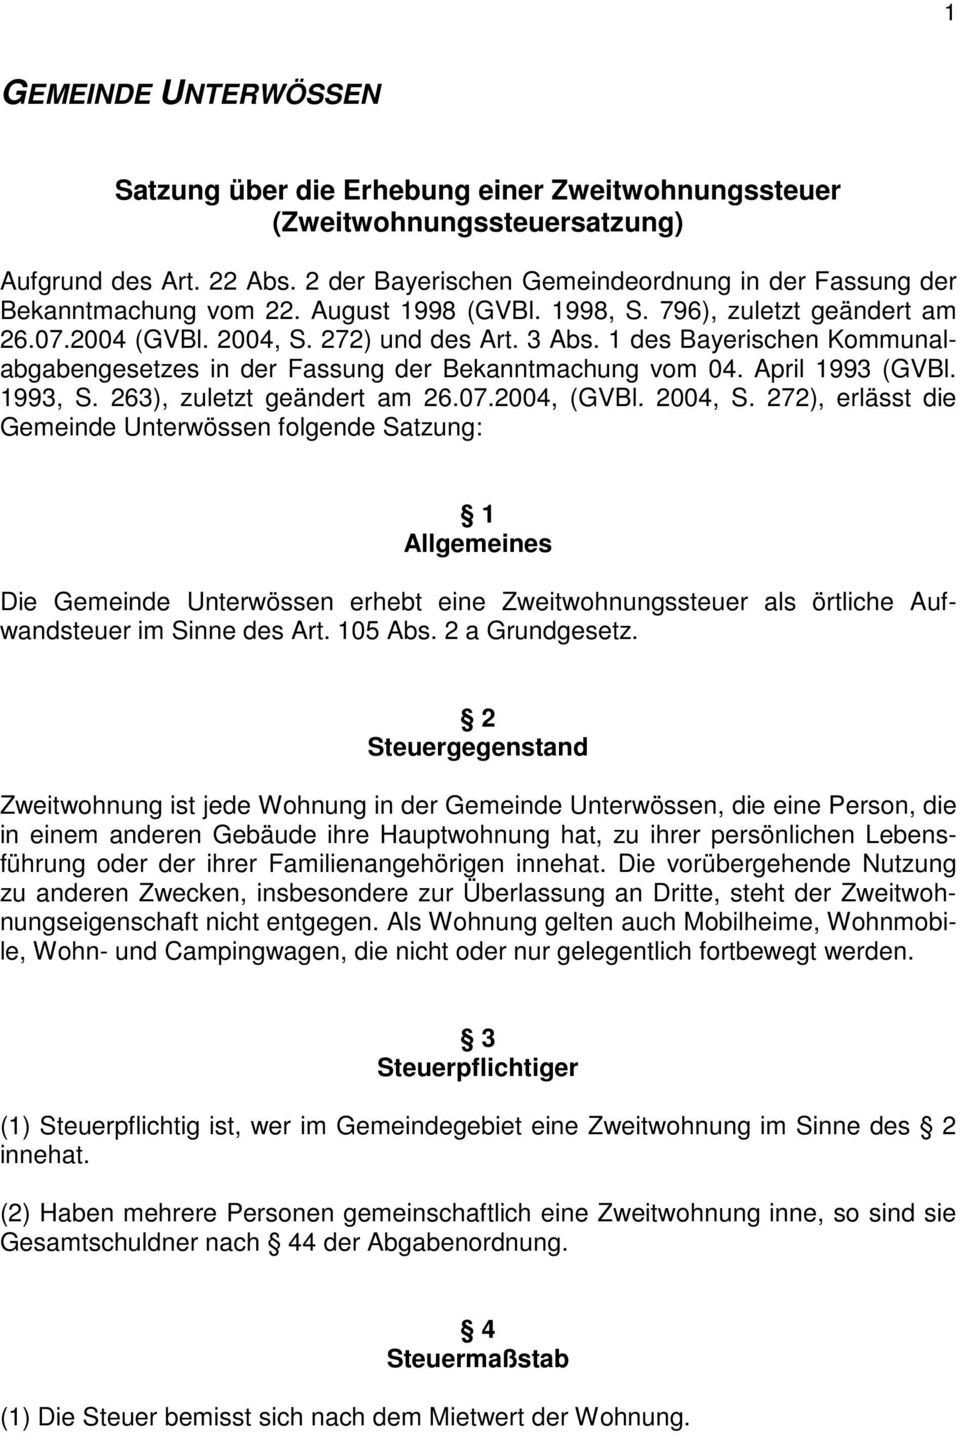 1 des Bayerischen Kommunalabgabengesetzes in der Fassung der Bekanntmachung vom 04. April 1993 (GVBl. 1993, S. 263), zuletzt geändert am 26.07.2004, (GVBl. 2004, S.